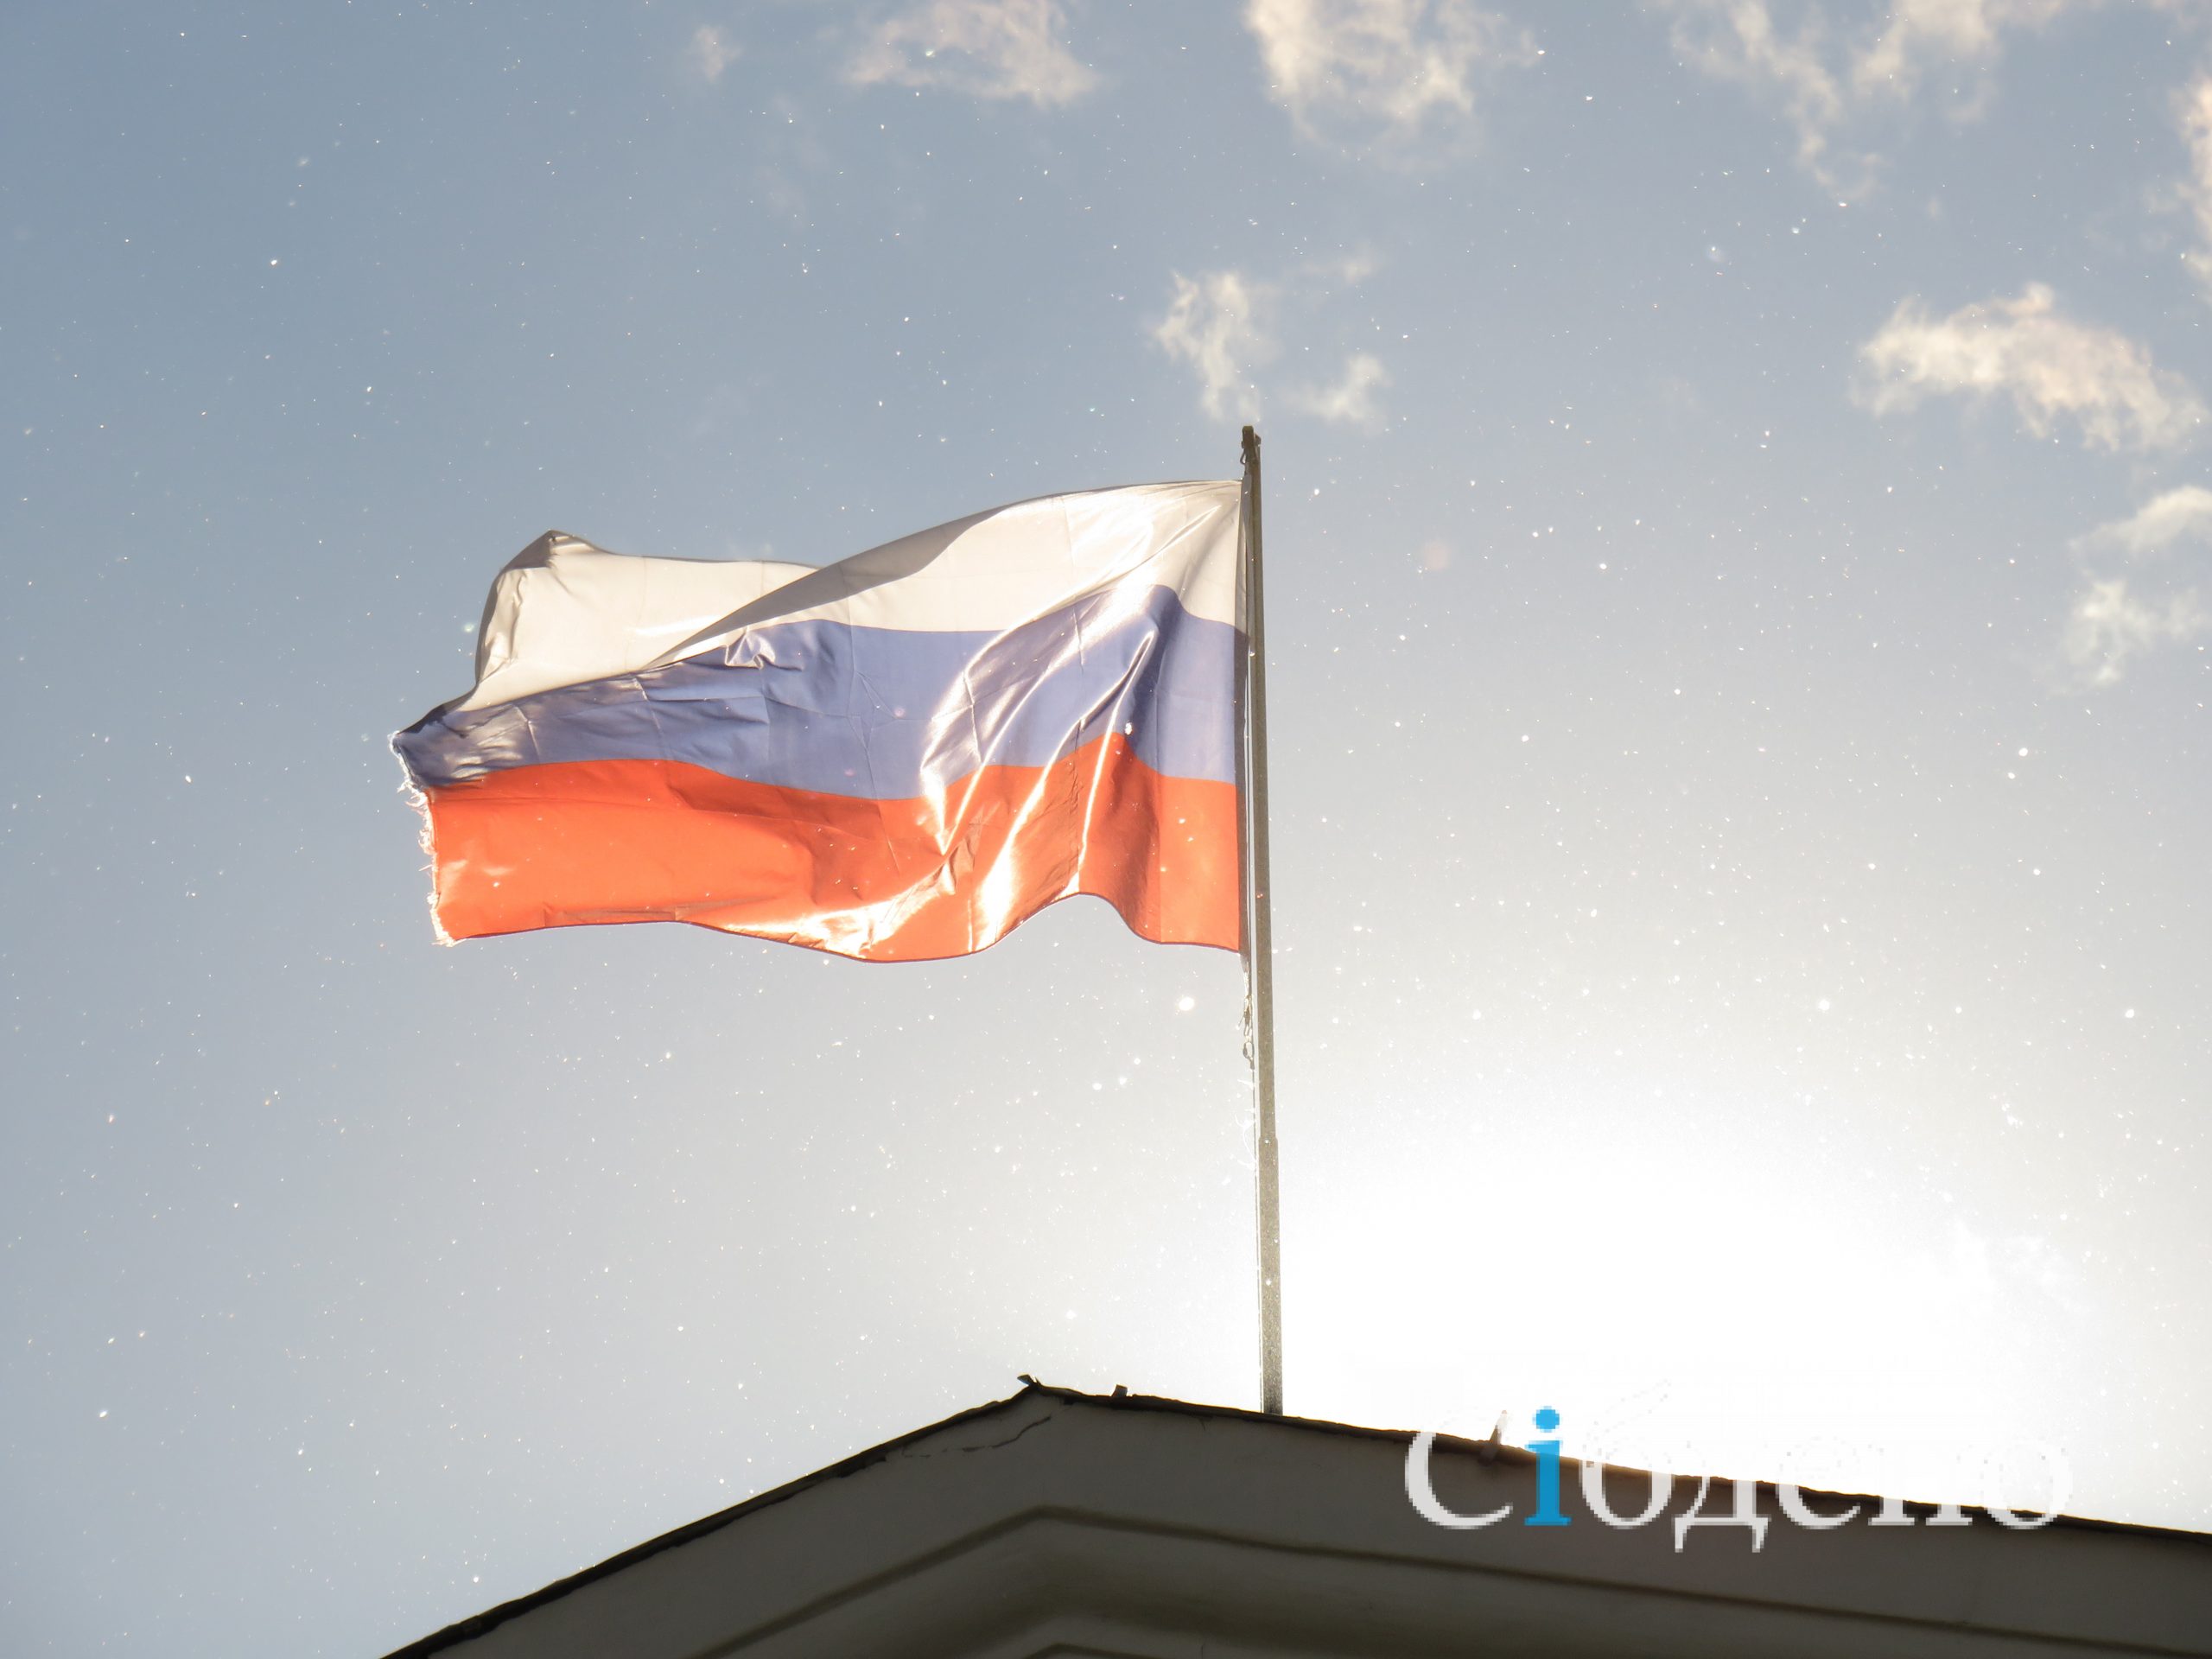 «Стыдно смотреть на них»: кемеровчанка испытала омерзение от флагов России